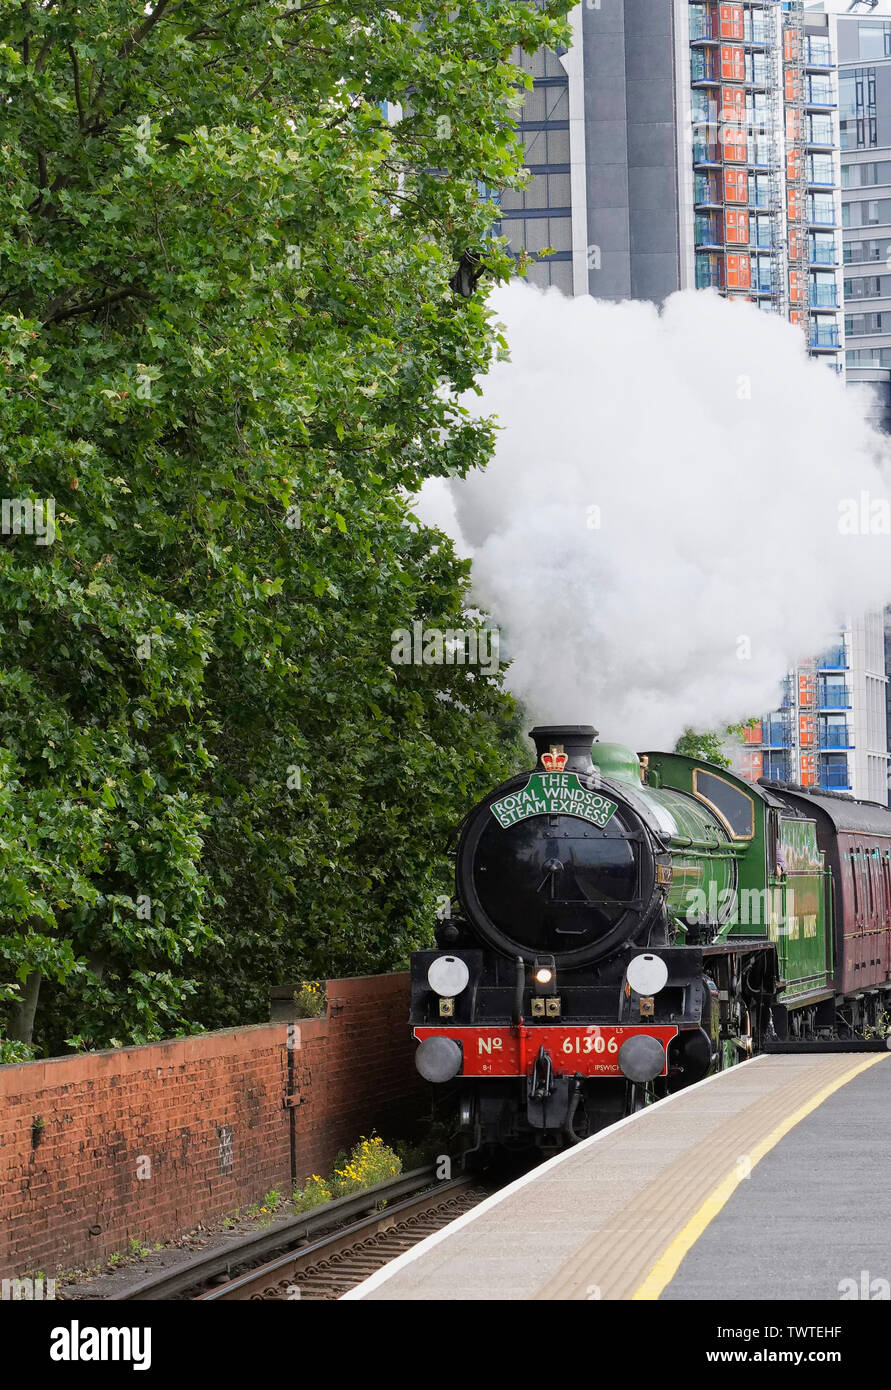 61306 sur le Mayflower course inaugurale du Royal Windsor Express à vapeur sur le 4 juin 2019. Banque D'Images